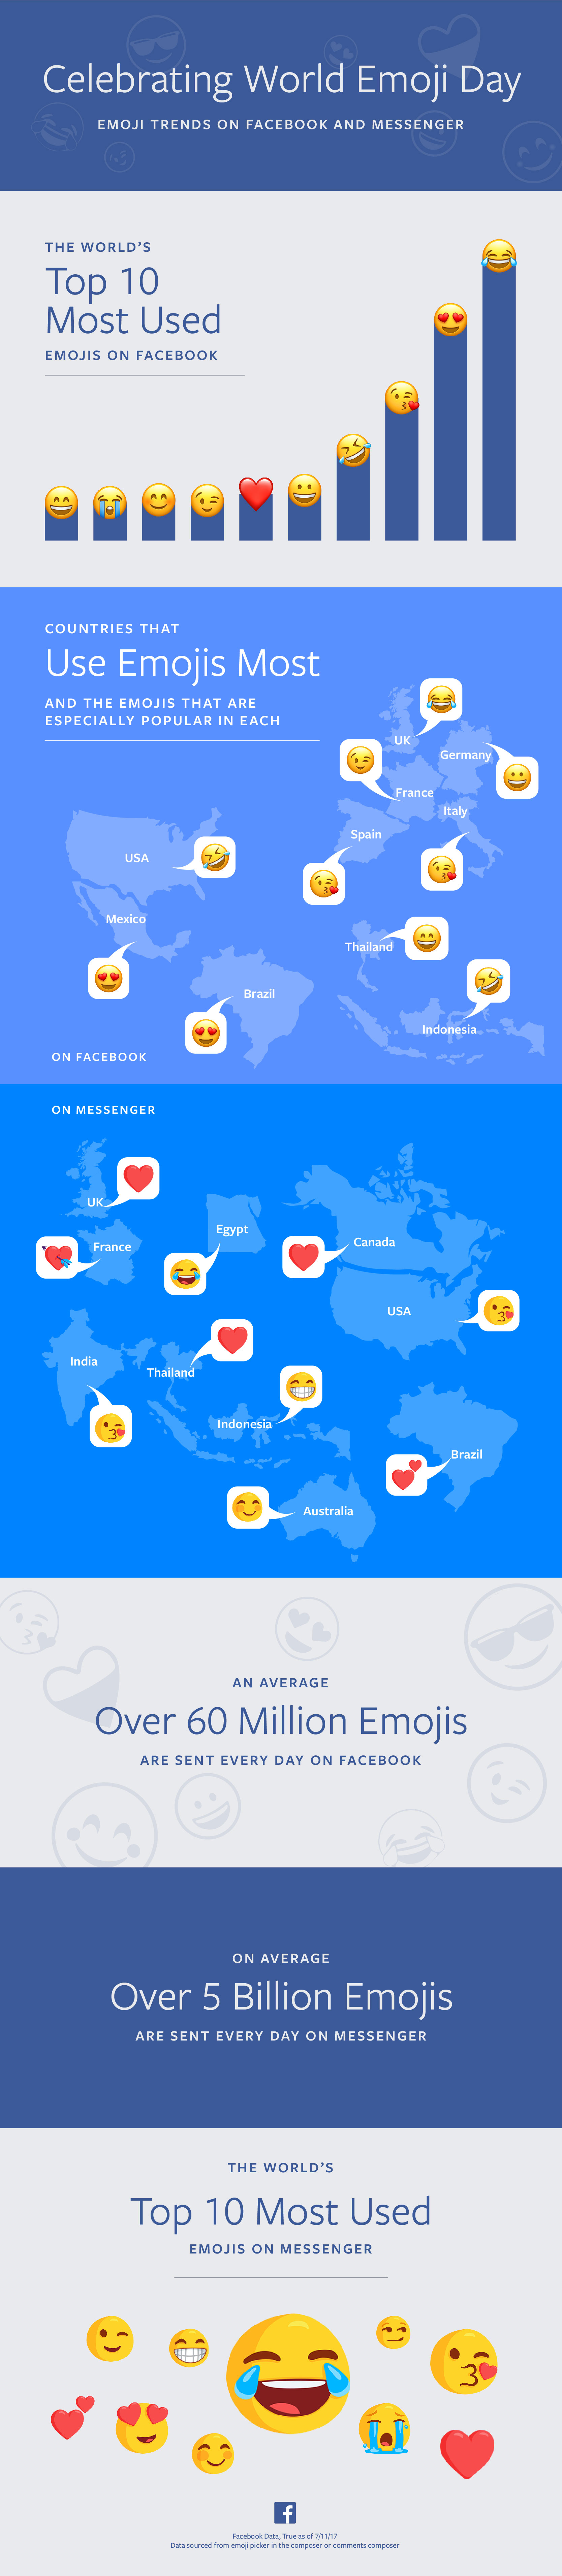 Facebook-World-Emoji-Day-Infographic